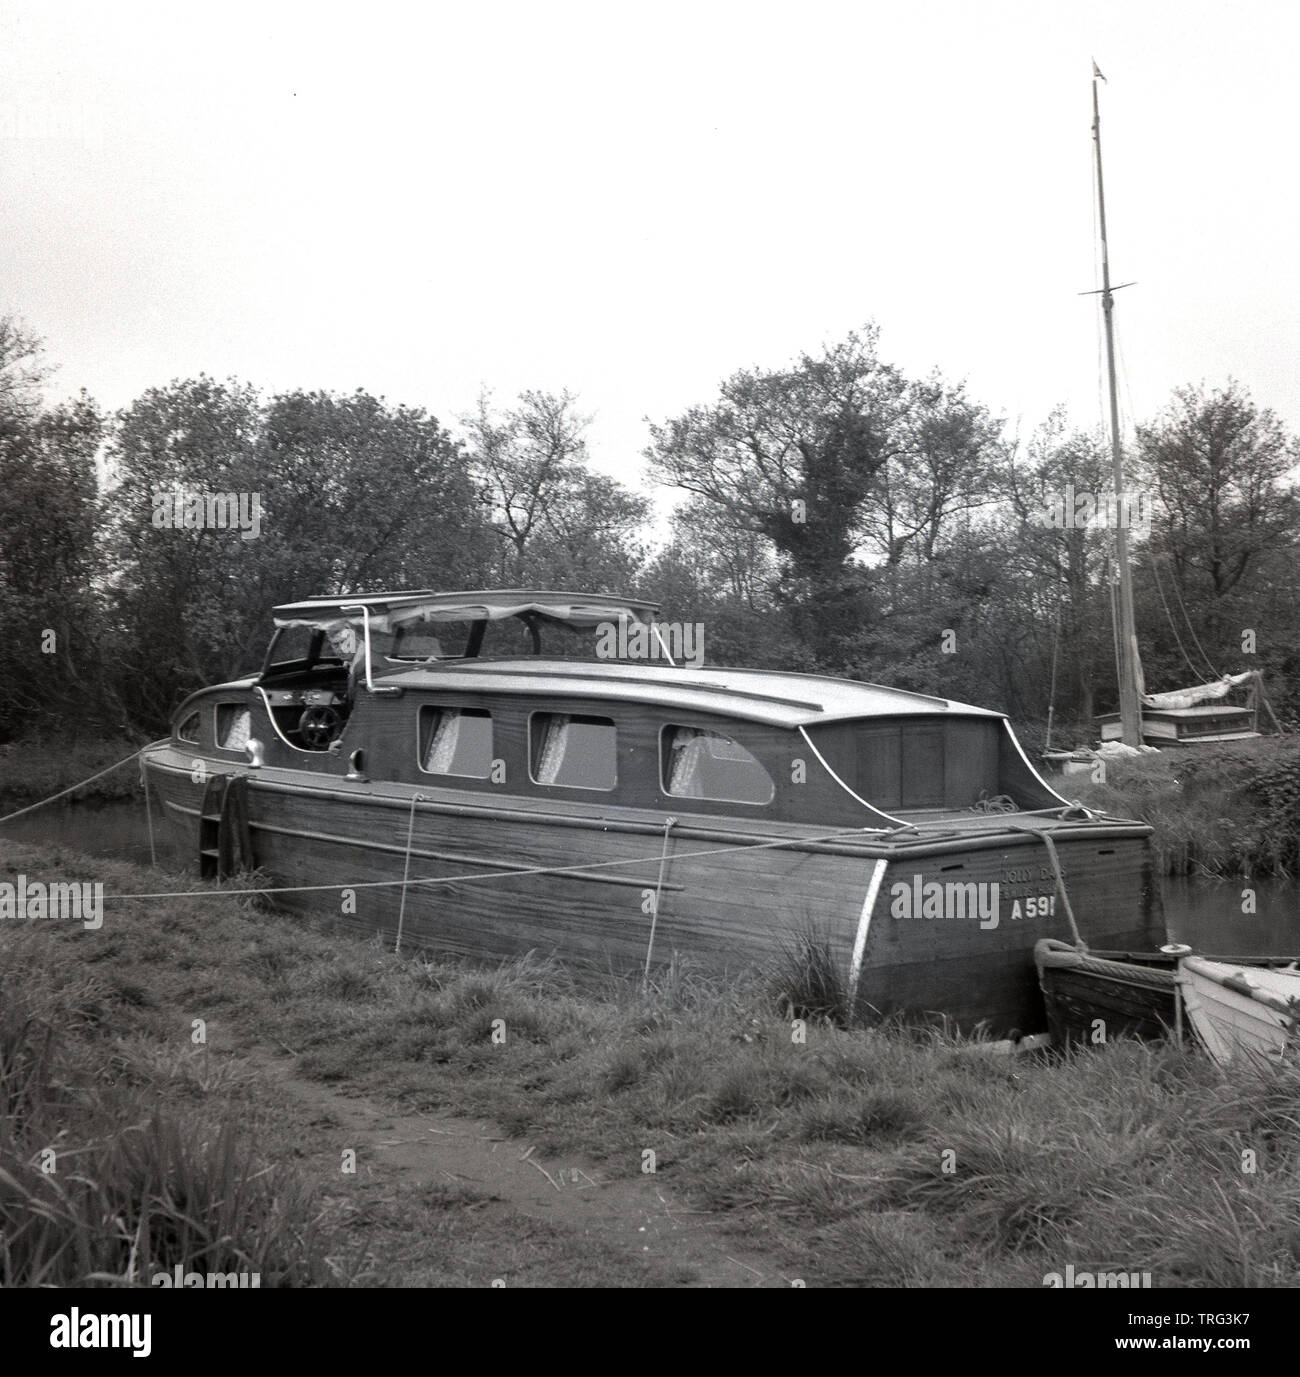 Années 1950, historique, un homme sur un bateau de croisière en bois, amarré le long d'une rivière sur la Tamise près de Oxford, Angleterre, Royaume-Uni. Banque D'Images